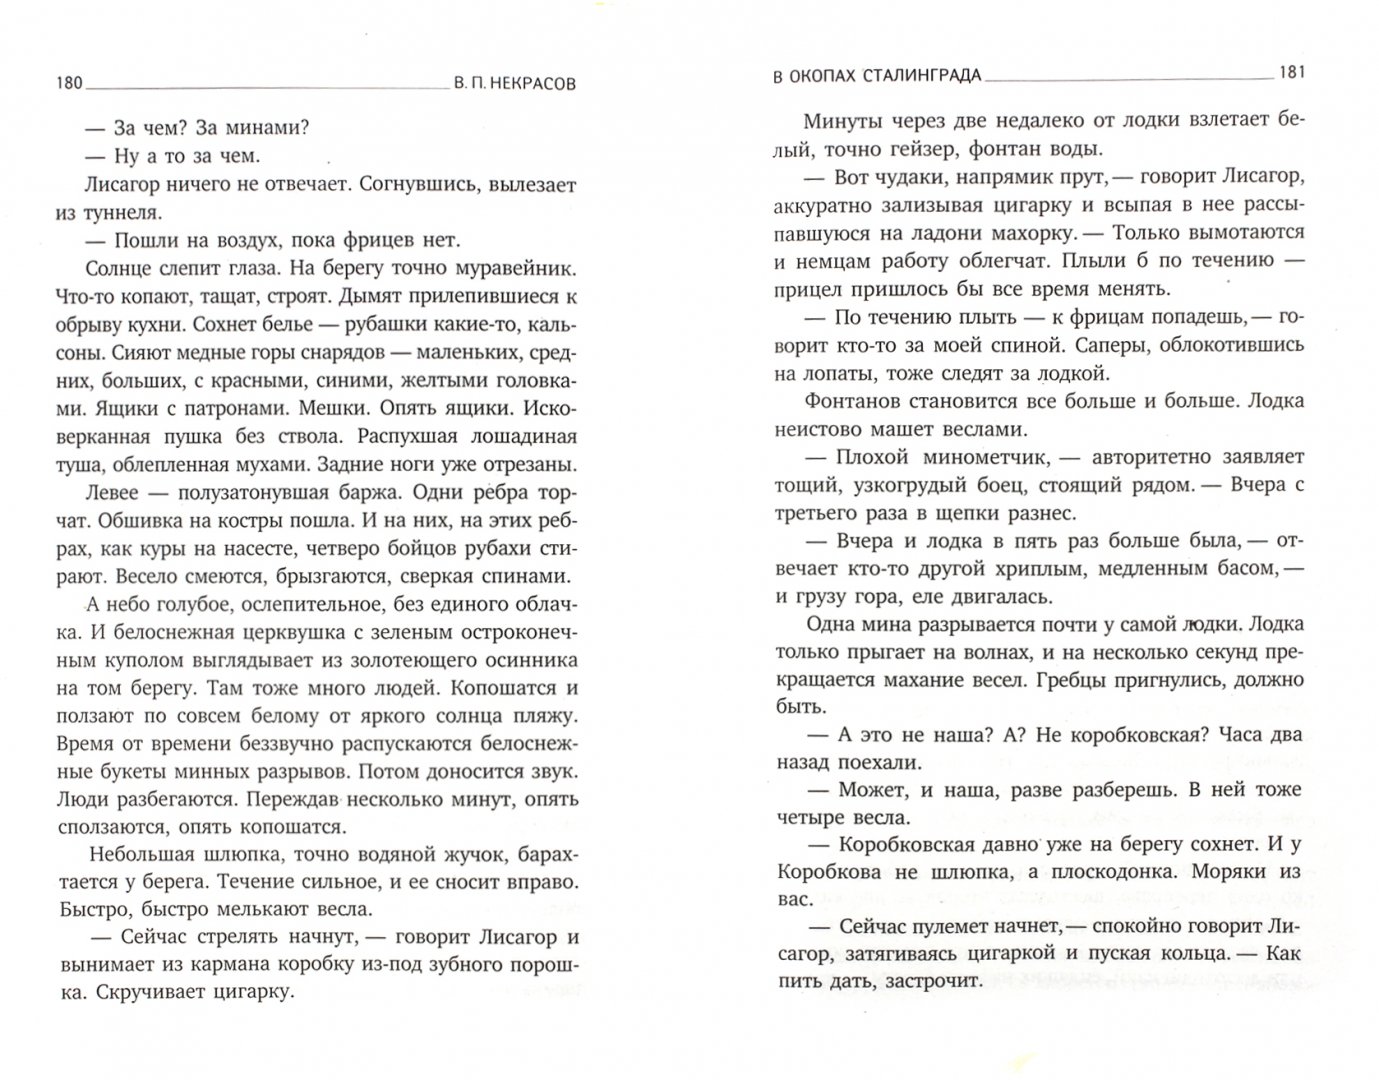 Иллюстрация 1 из 6 для В окопах Сталинграда - Виктор Некрасов | Лабиринт - книги. Источник: Лабиринт